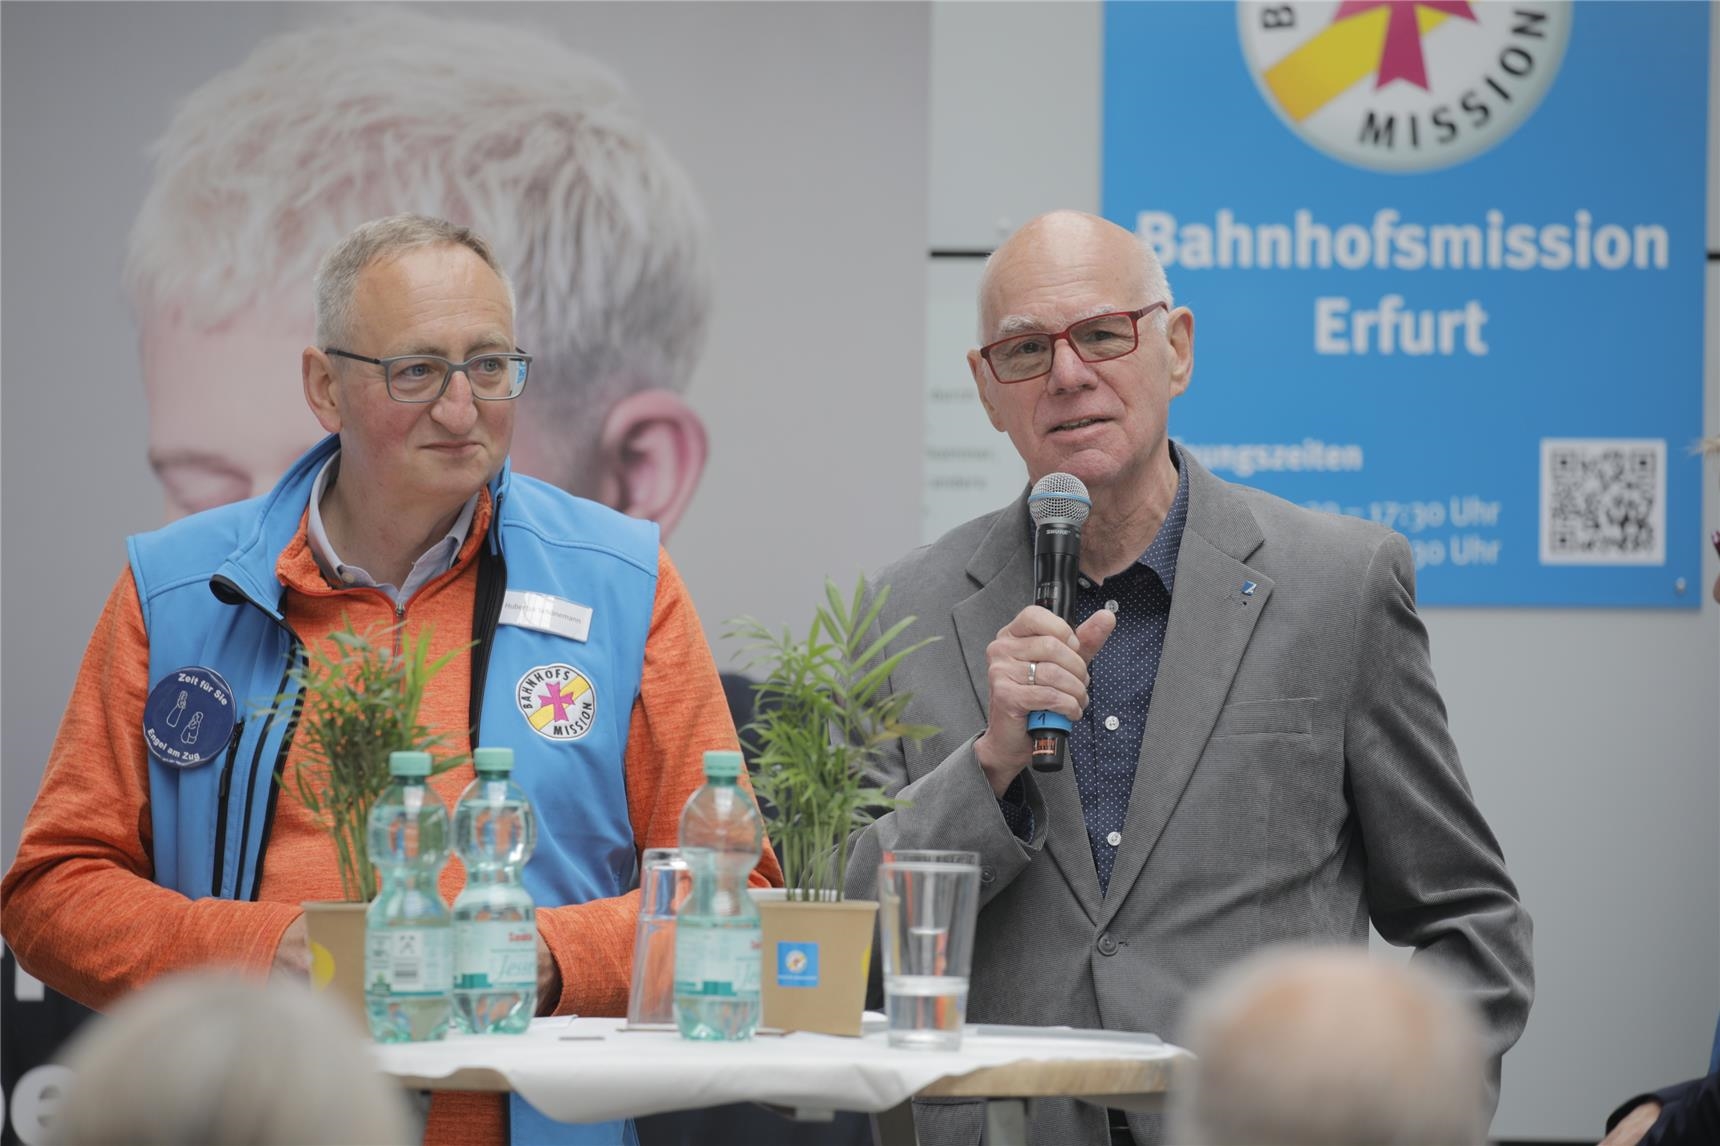 Diskussion bei Veranstaltung Friedensort Bahnhofsmission (Ralf Gerard)